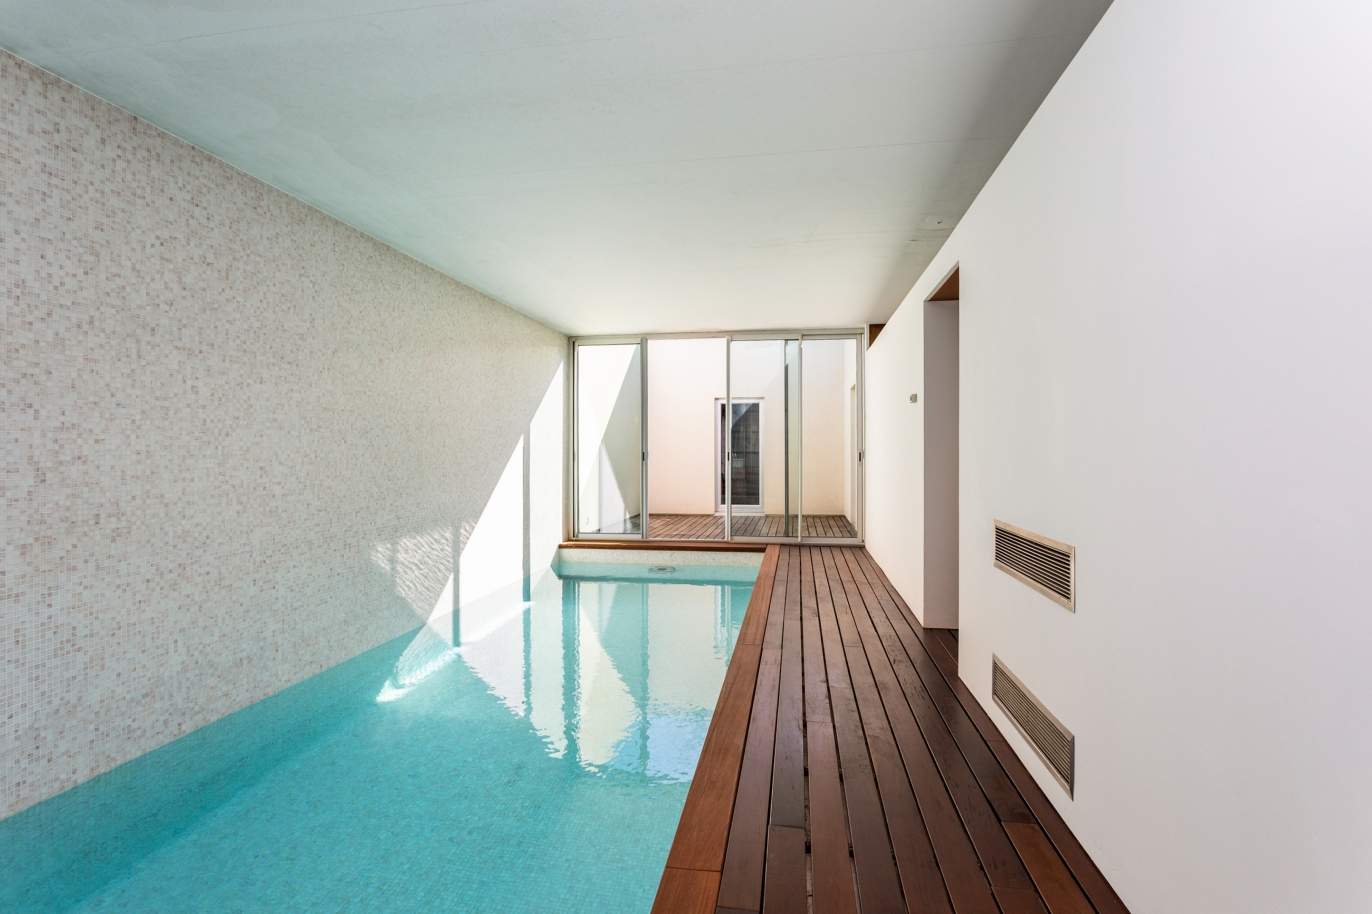 Venda: Casa de Campo contemporânea, com piscina e jardins, Barcelos_166234